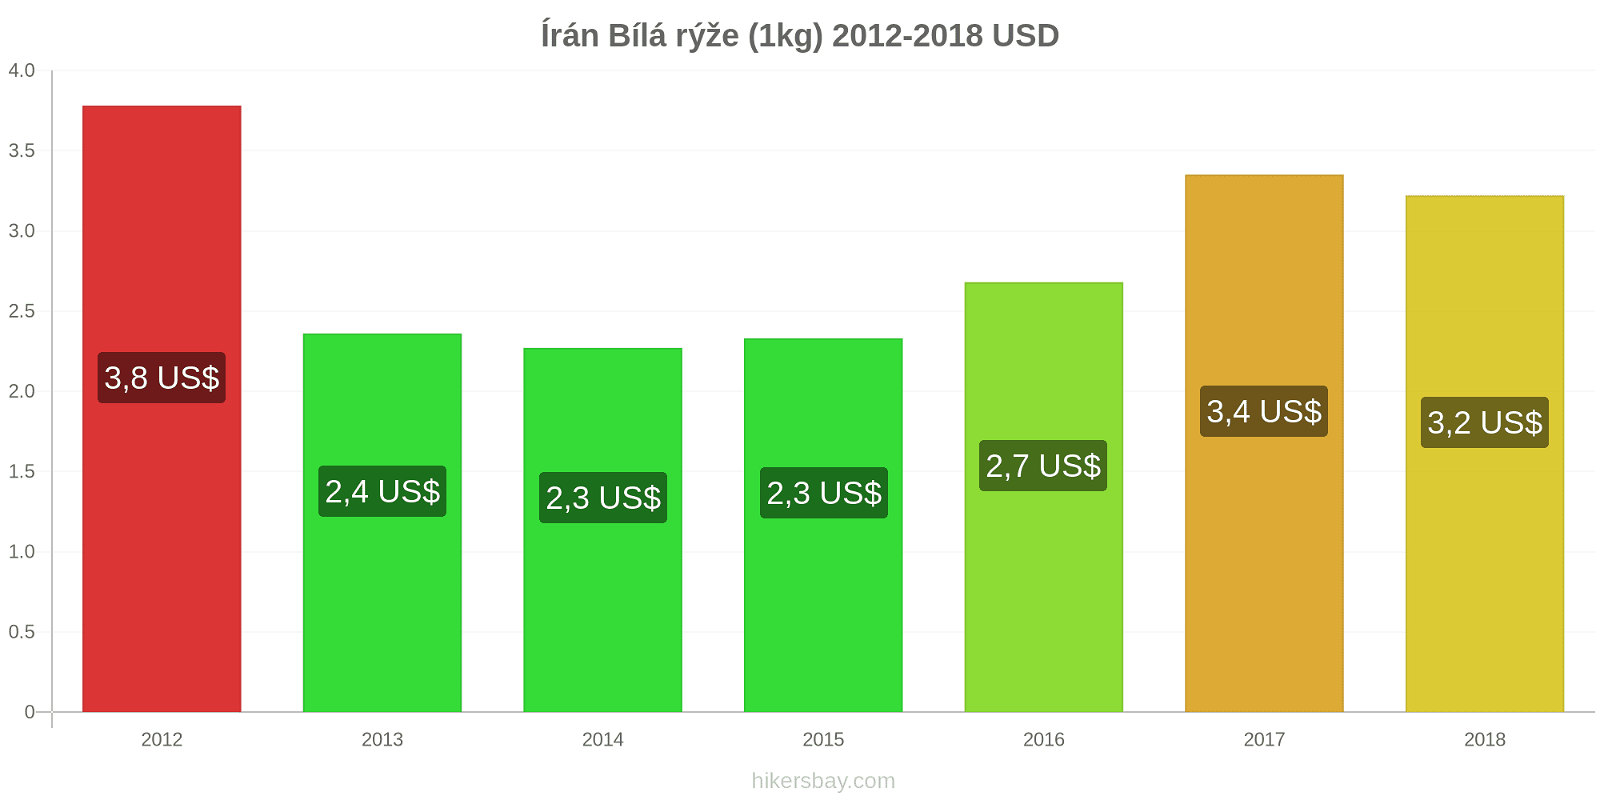 Írán změny cen Kilo bílé rýže hikersbay.com